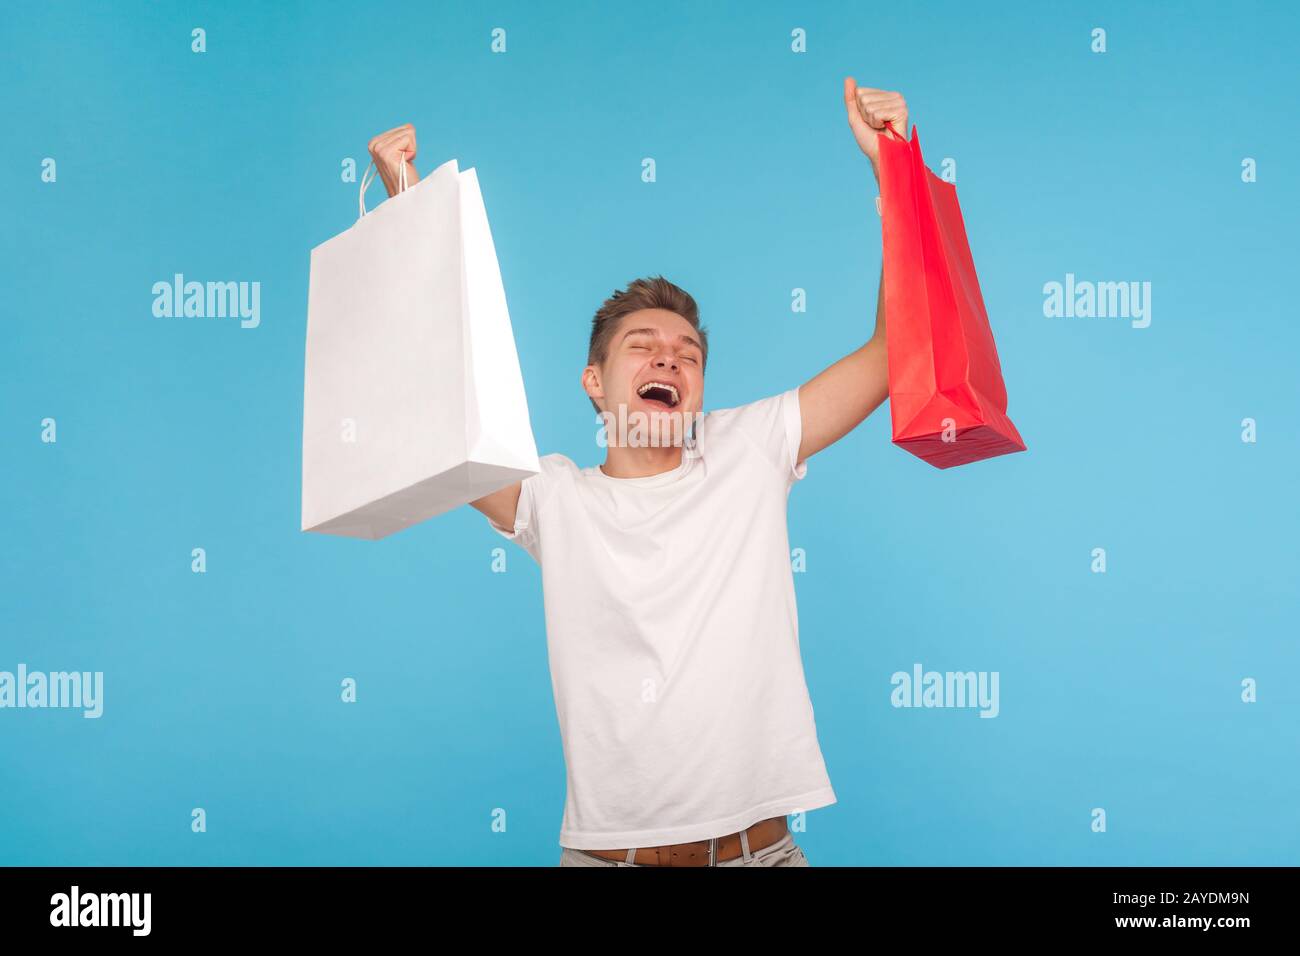 Un homme écostatique surjoé dans un t-shirt criant avec enthousiasme et soulevant des paquets, tenant des sacs de shopping, satisfait de l'achat et favorable pays Banque D'Images